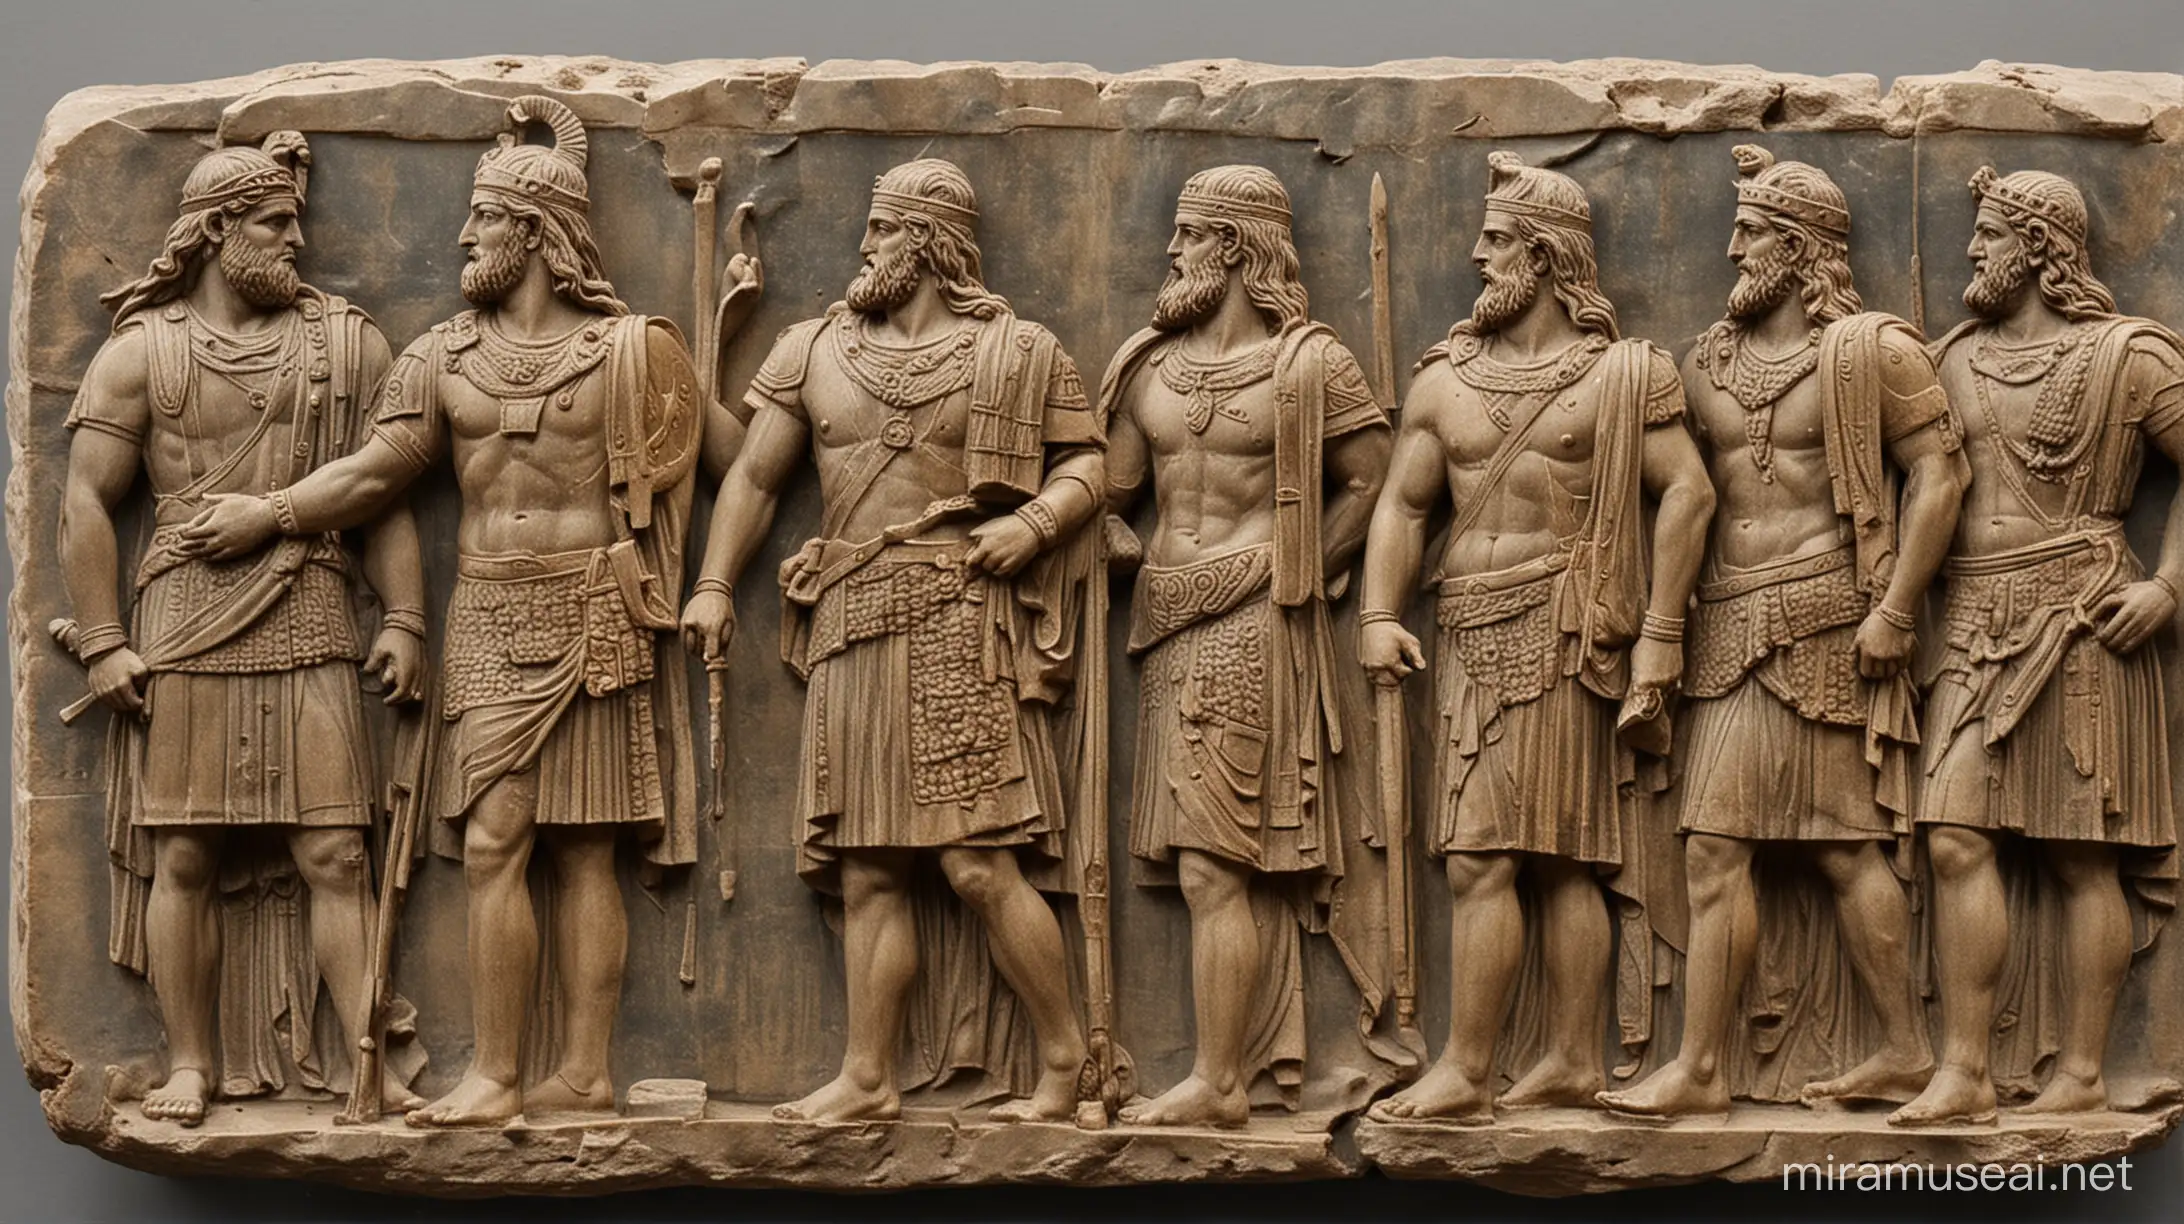 Artaxiad Kings of Armenia
Artaxias I (190–159 BC)
Tigranes I (159–123 BC)
Artavasdes I (123–95 BC)
Tigranes the Great (Tigranes II, 95–55 BC)
Artavasdes II (55–34 BC)
Artaxias II (33–20 BC)
Tigranes III (20–10 BC)
Tigranes IV with Erato (10–2 BC)
Ariobarzanes (2 BC–4 AD)
Artavasdes III (4–6 AD)
Tigranes V then ruled with Erato (6–12 AD